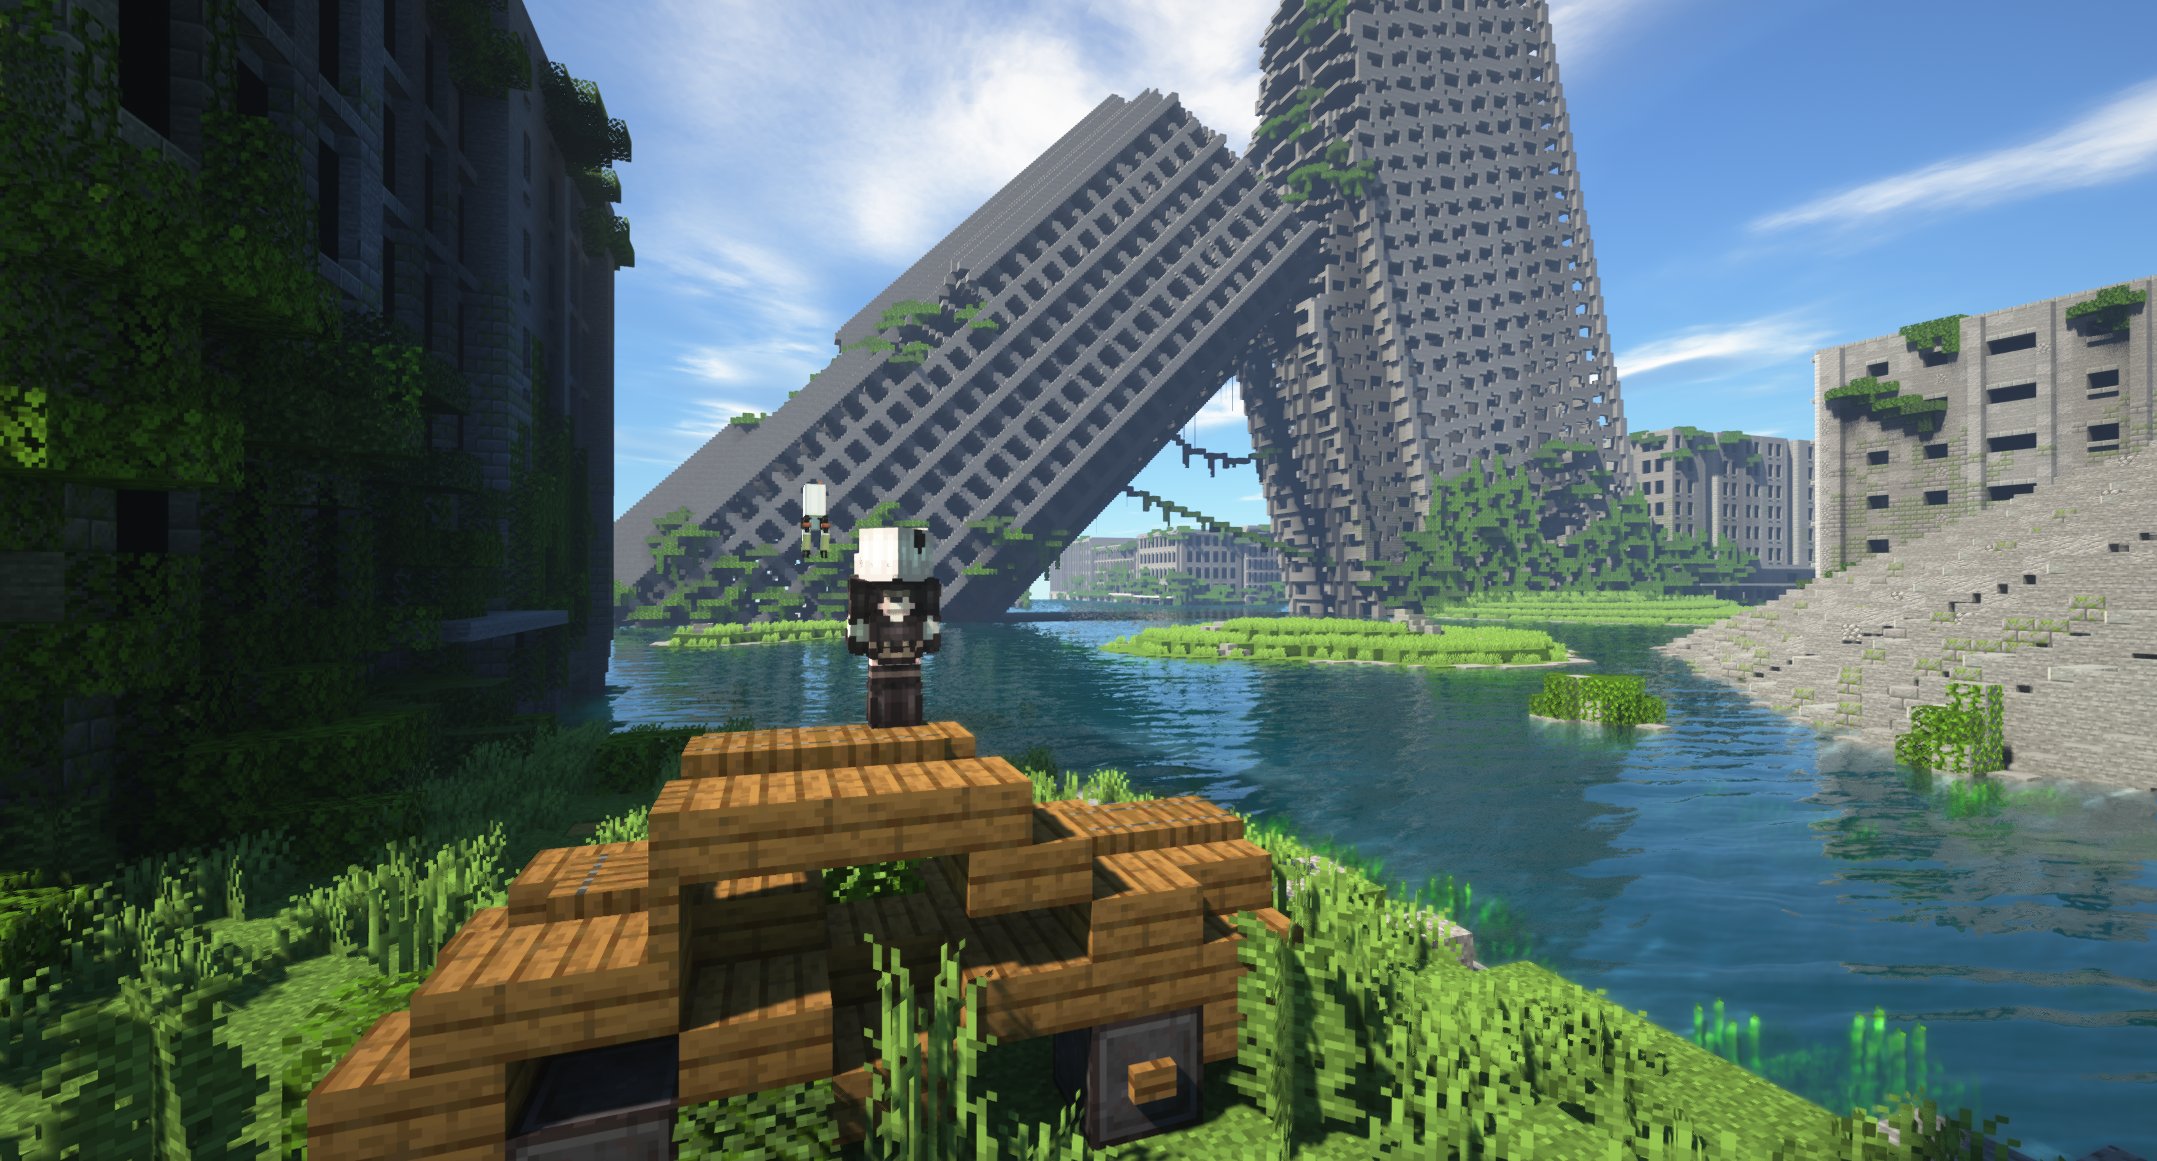 マイクラで作った水没都市 Minecraft Minecraft建築コミュ 話題の画像がわかるサイト